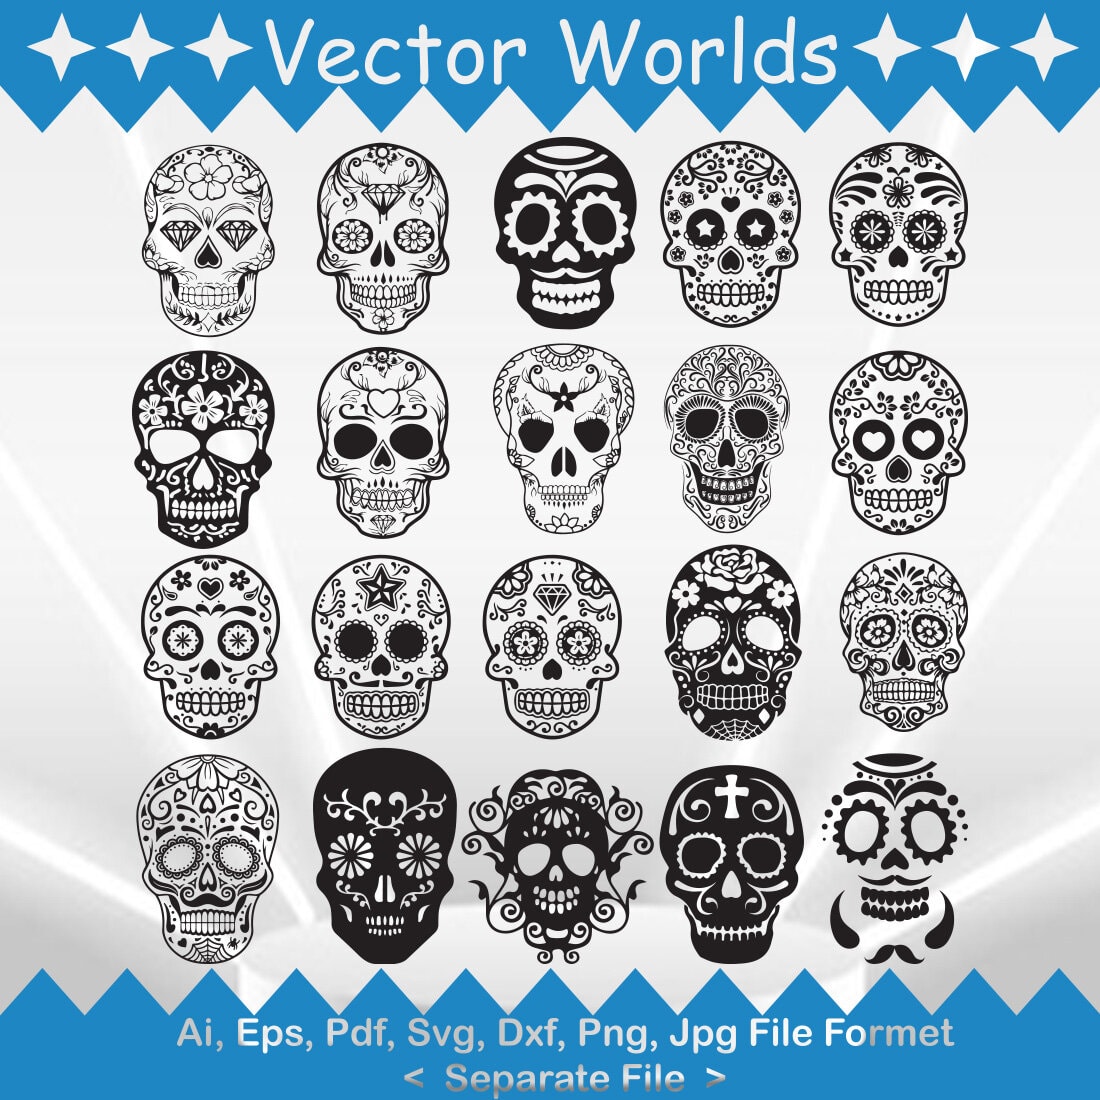 Día De Los Muertos SVG Vector Design cover image.